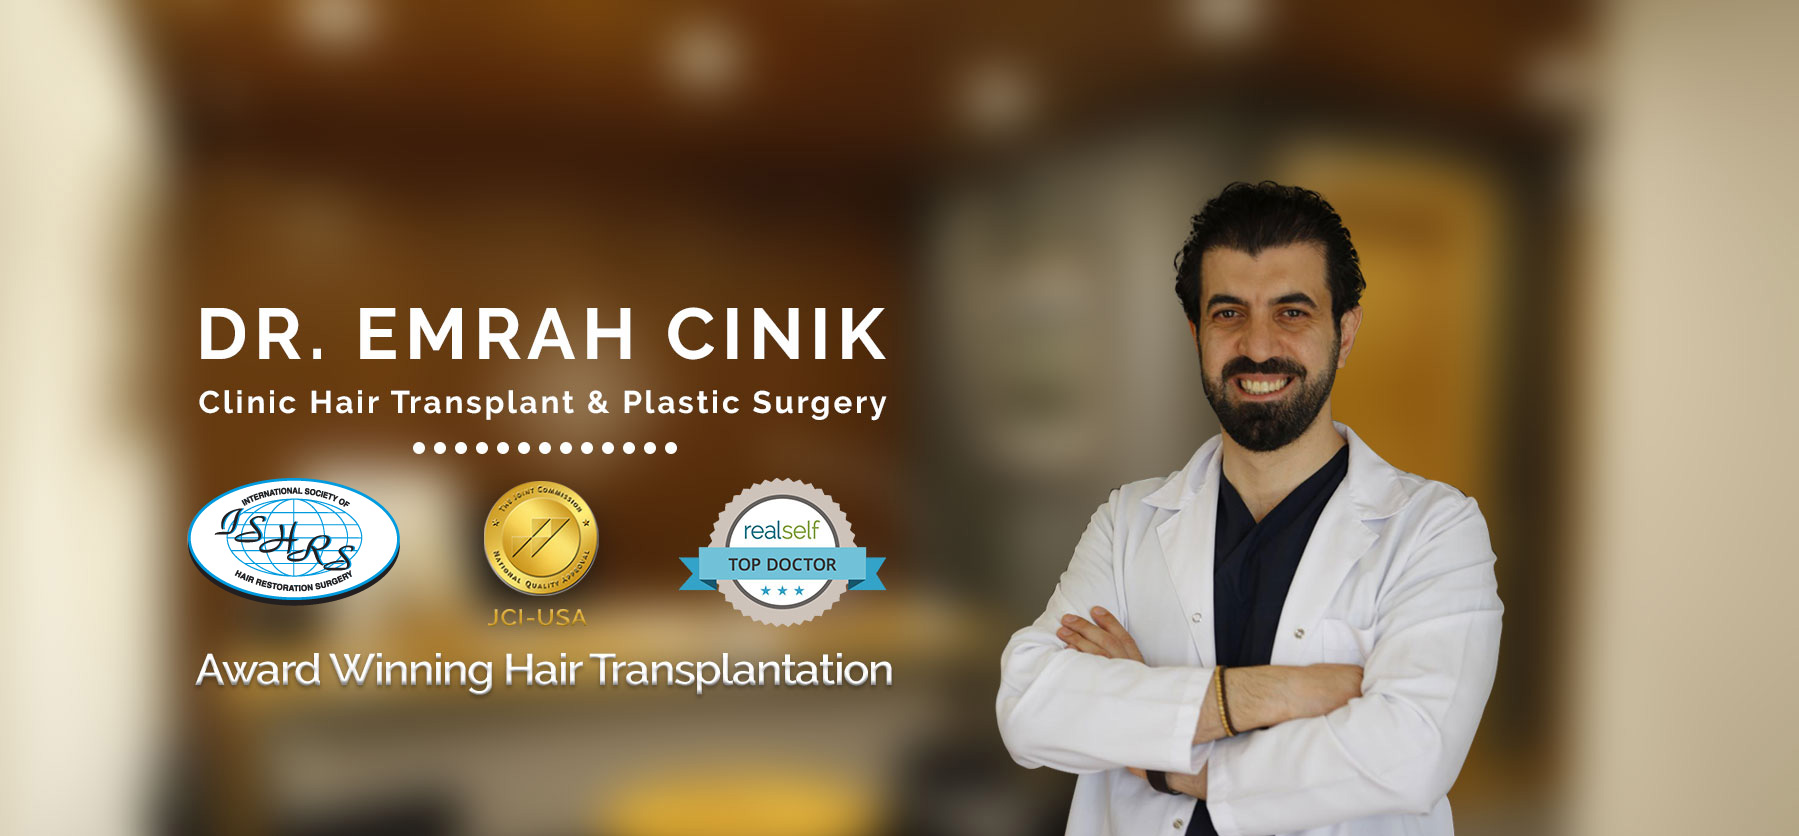  Dr. Emrah Cinik online collection system